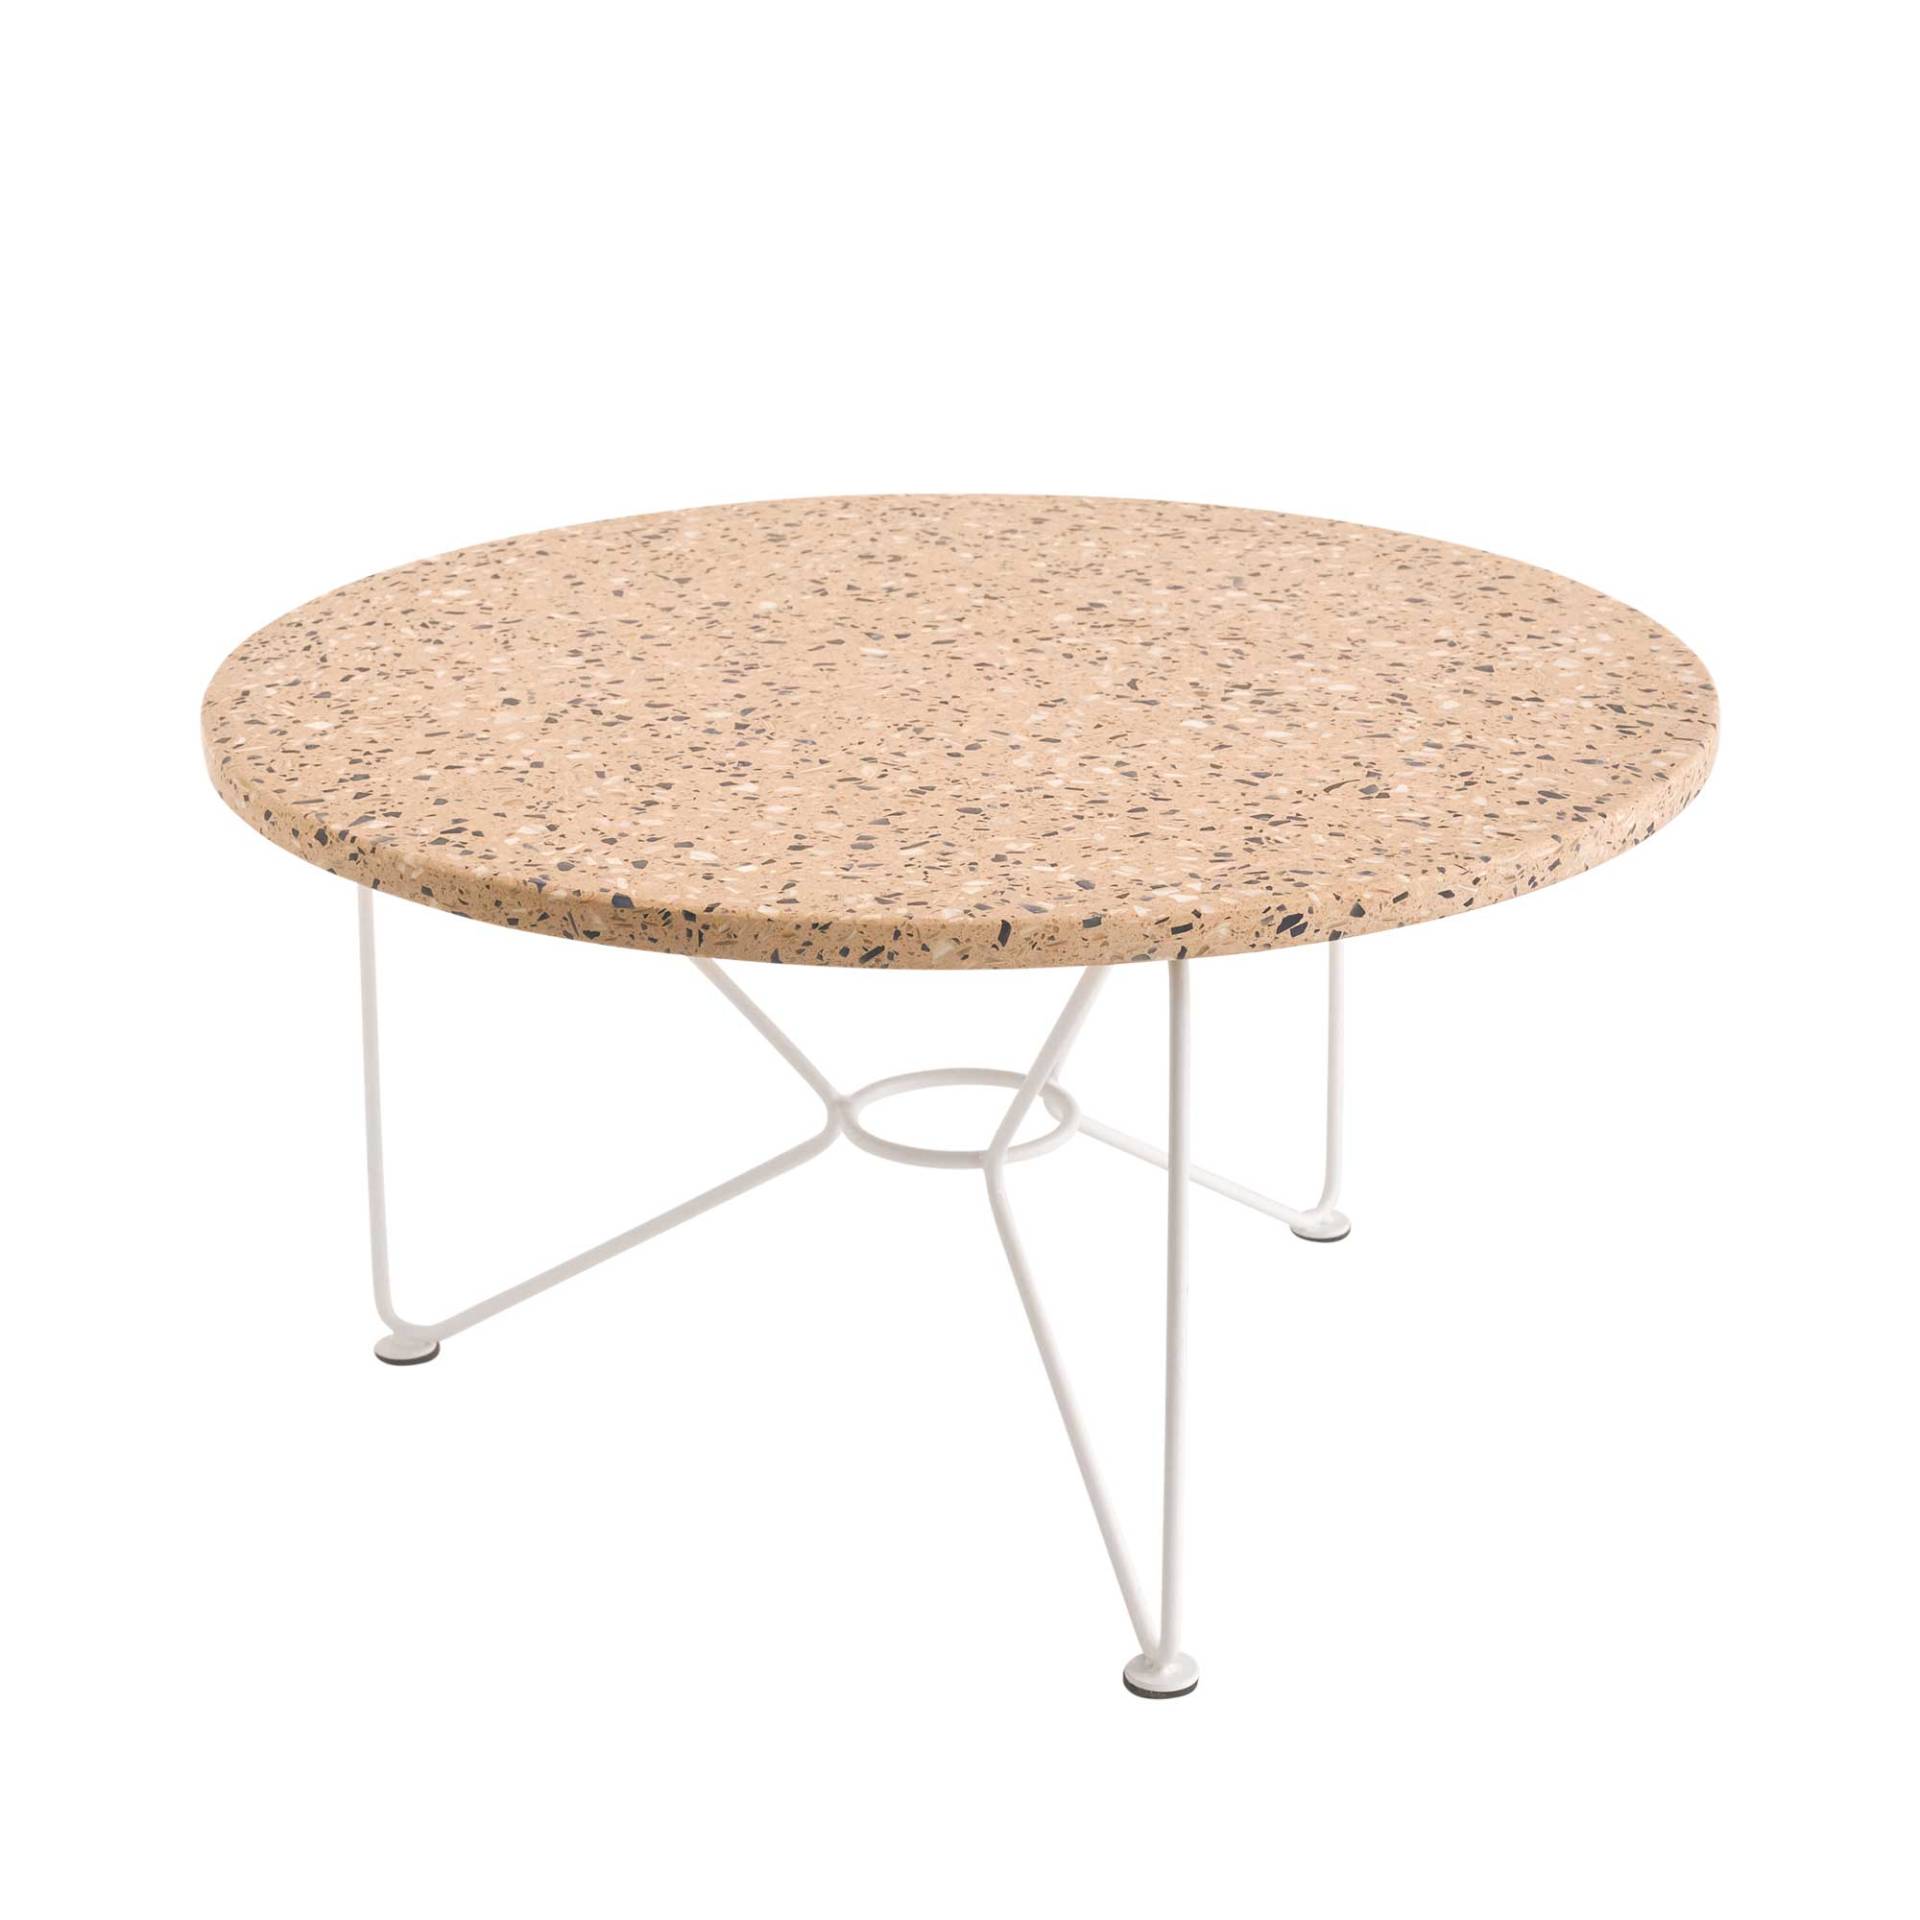 Acapulco Design - The Low Table Beistelltisch Terrazzo Ø65cm - terrazzo/rosato/Tischplatte Terrazzo/Gestell Stahl pulverbeschichtet/HxØ 36x65cm von Acapulco Design